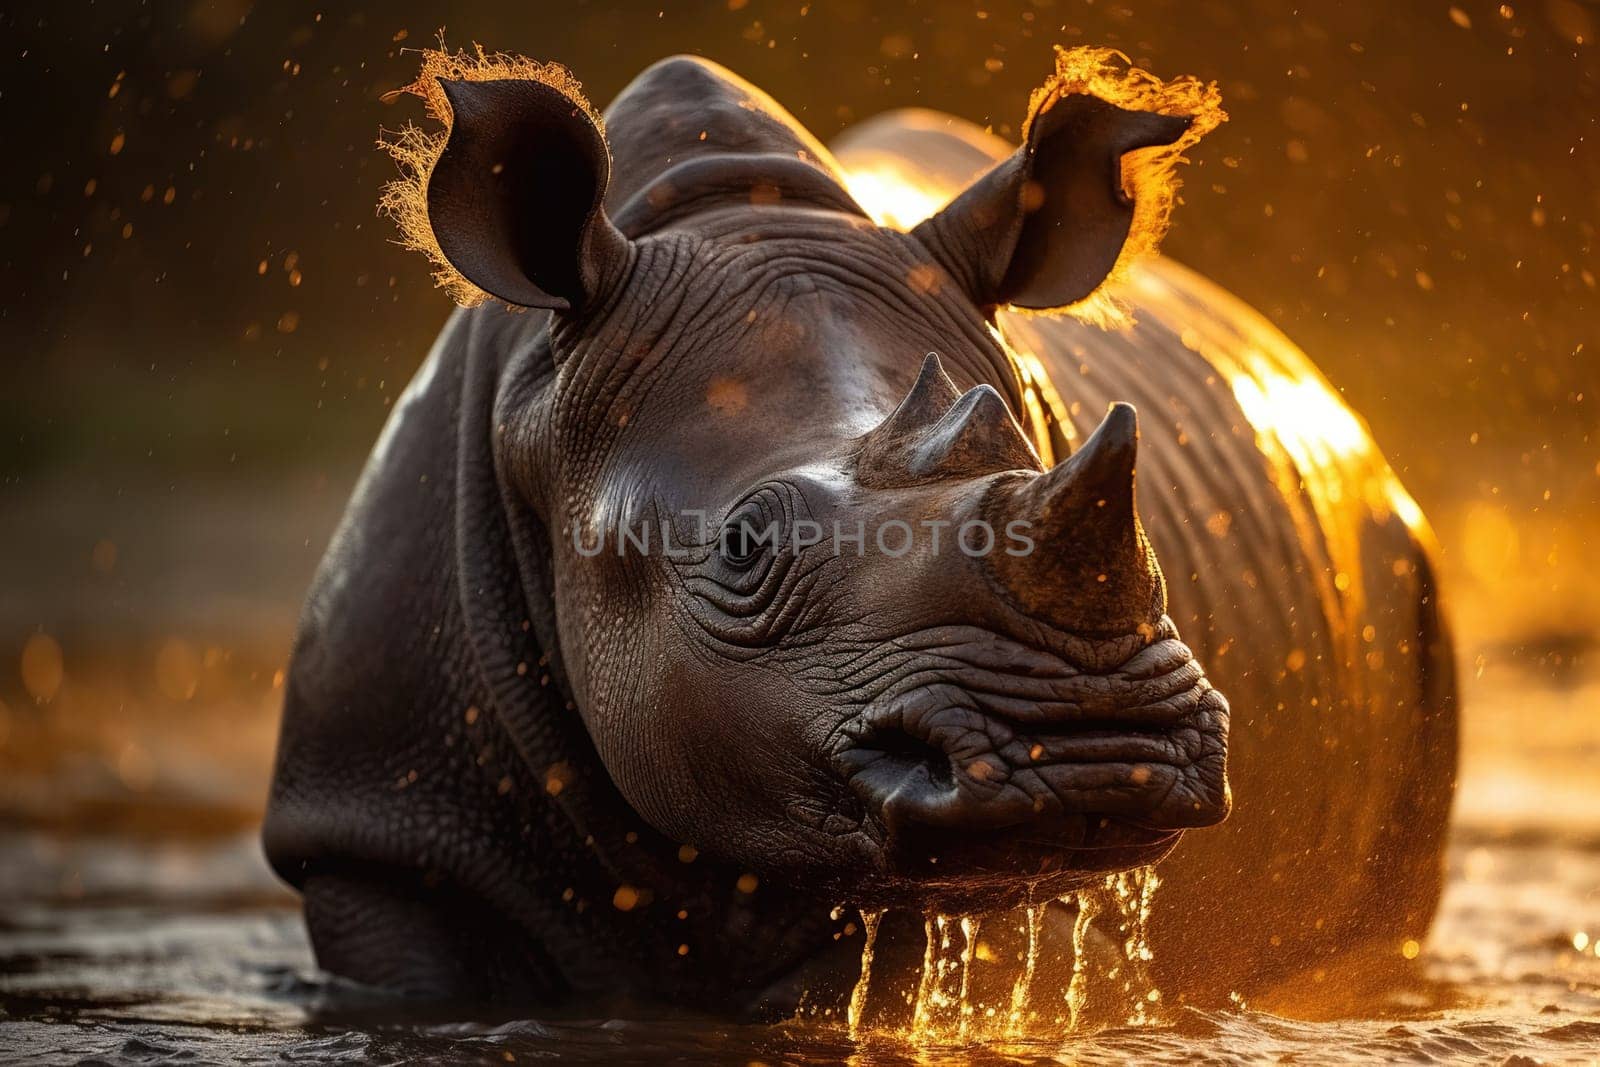 Large Rhino Bathes In Lake At Sunset by GekaSkr